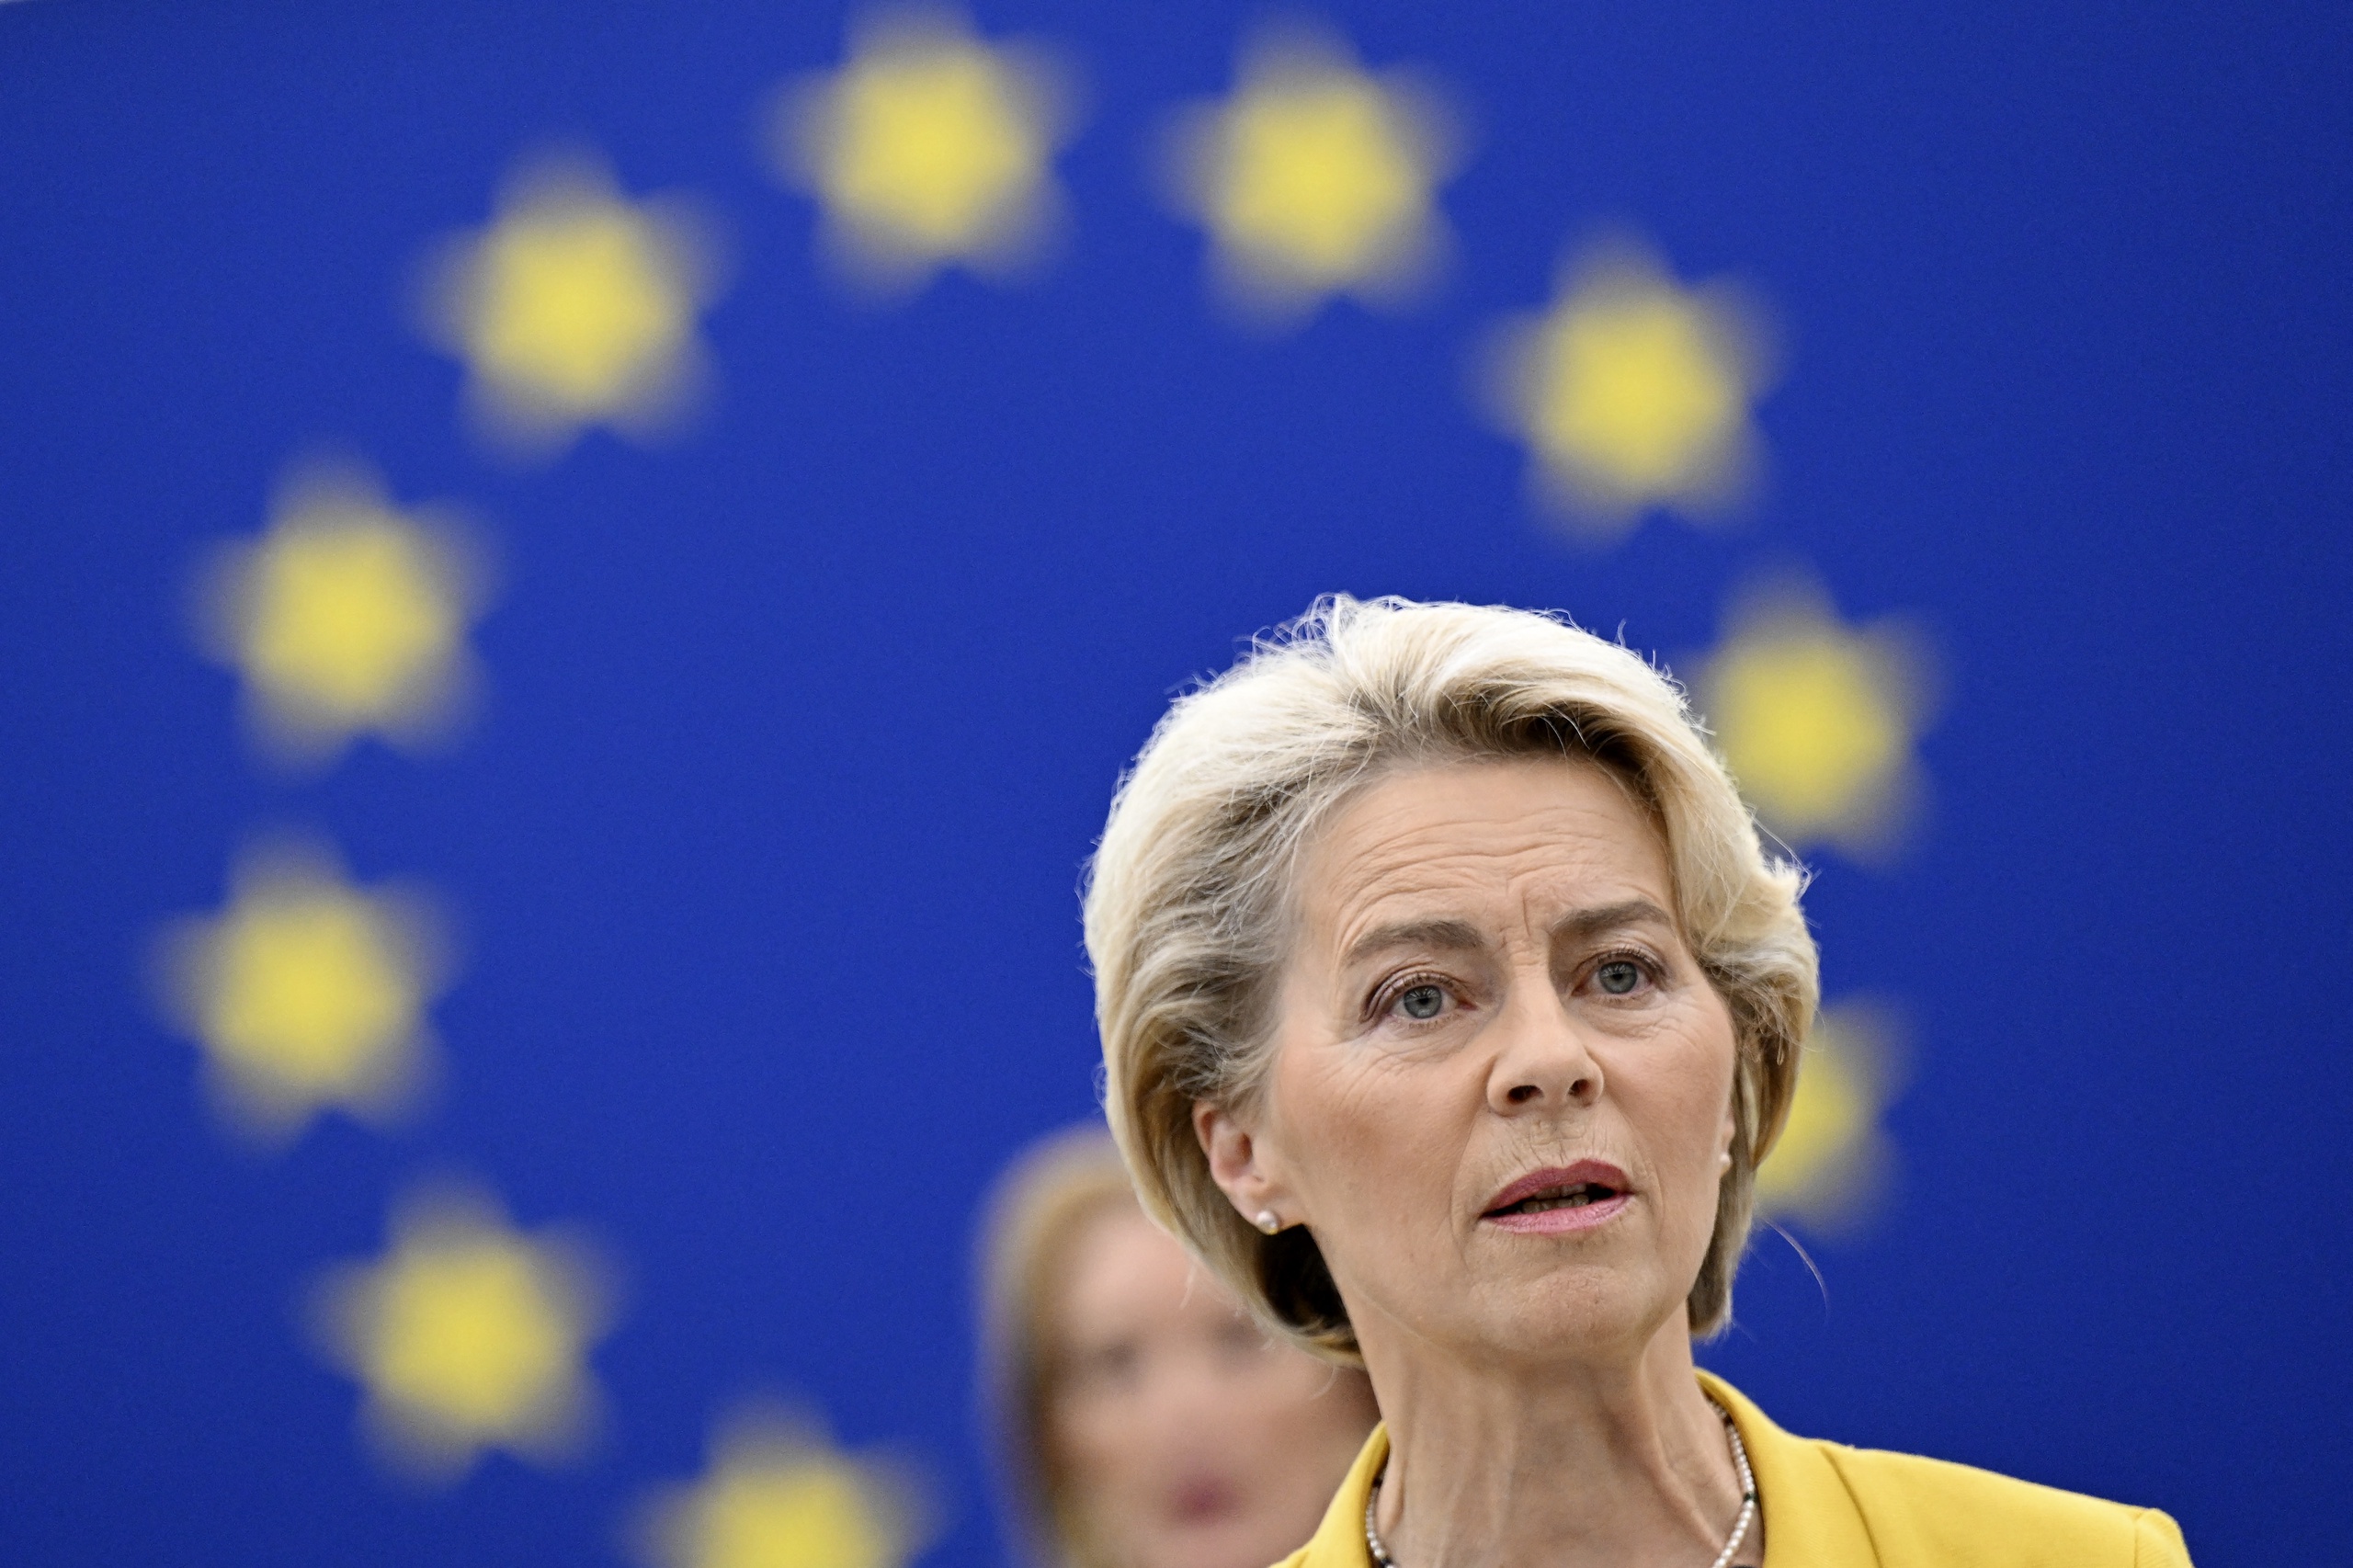 Europese Commissie-voorzitter Ursula von der Leyen betuigde tijdens haar jaarlijkse toespraak aan het Europees parlement dat de steun van de EU aan Oekraïne 'onwrikbaar' is.